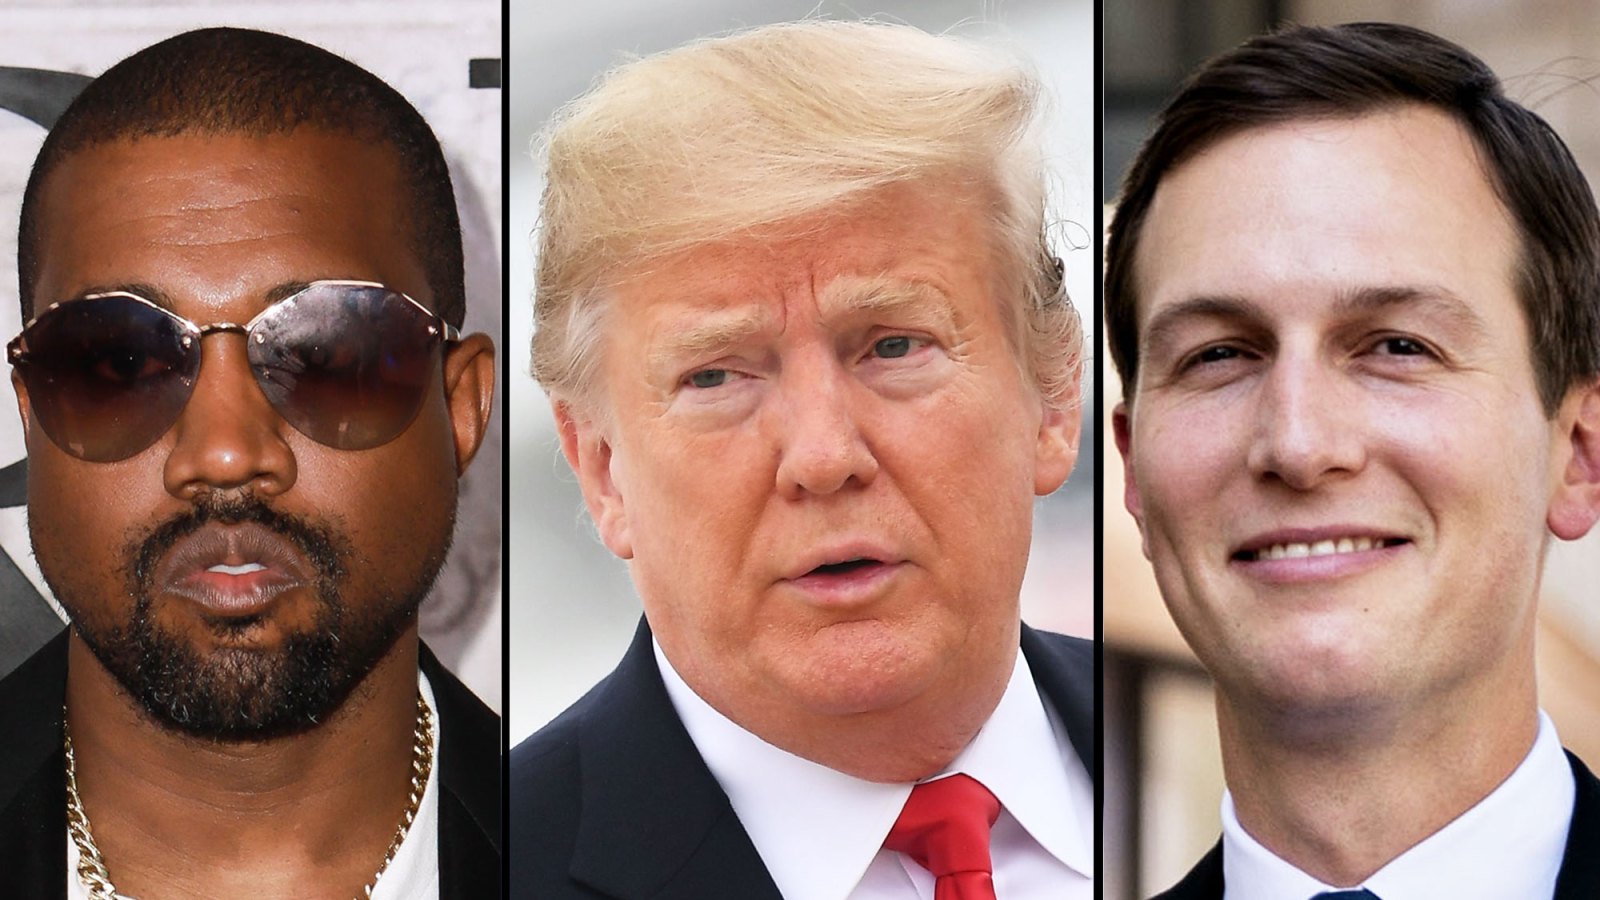 Kanye West, President Donald Trump and Jared Kushner